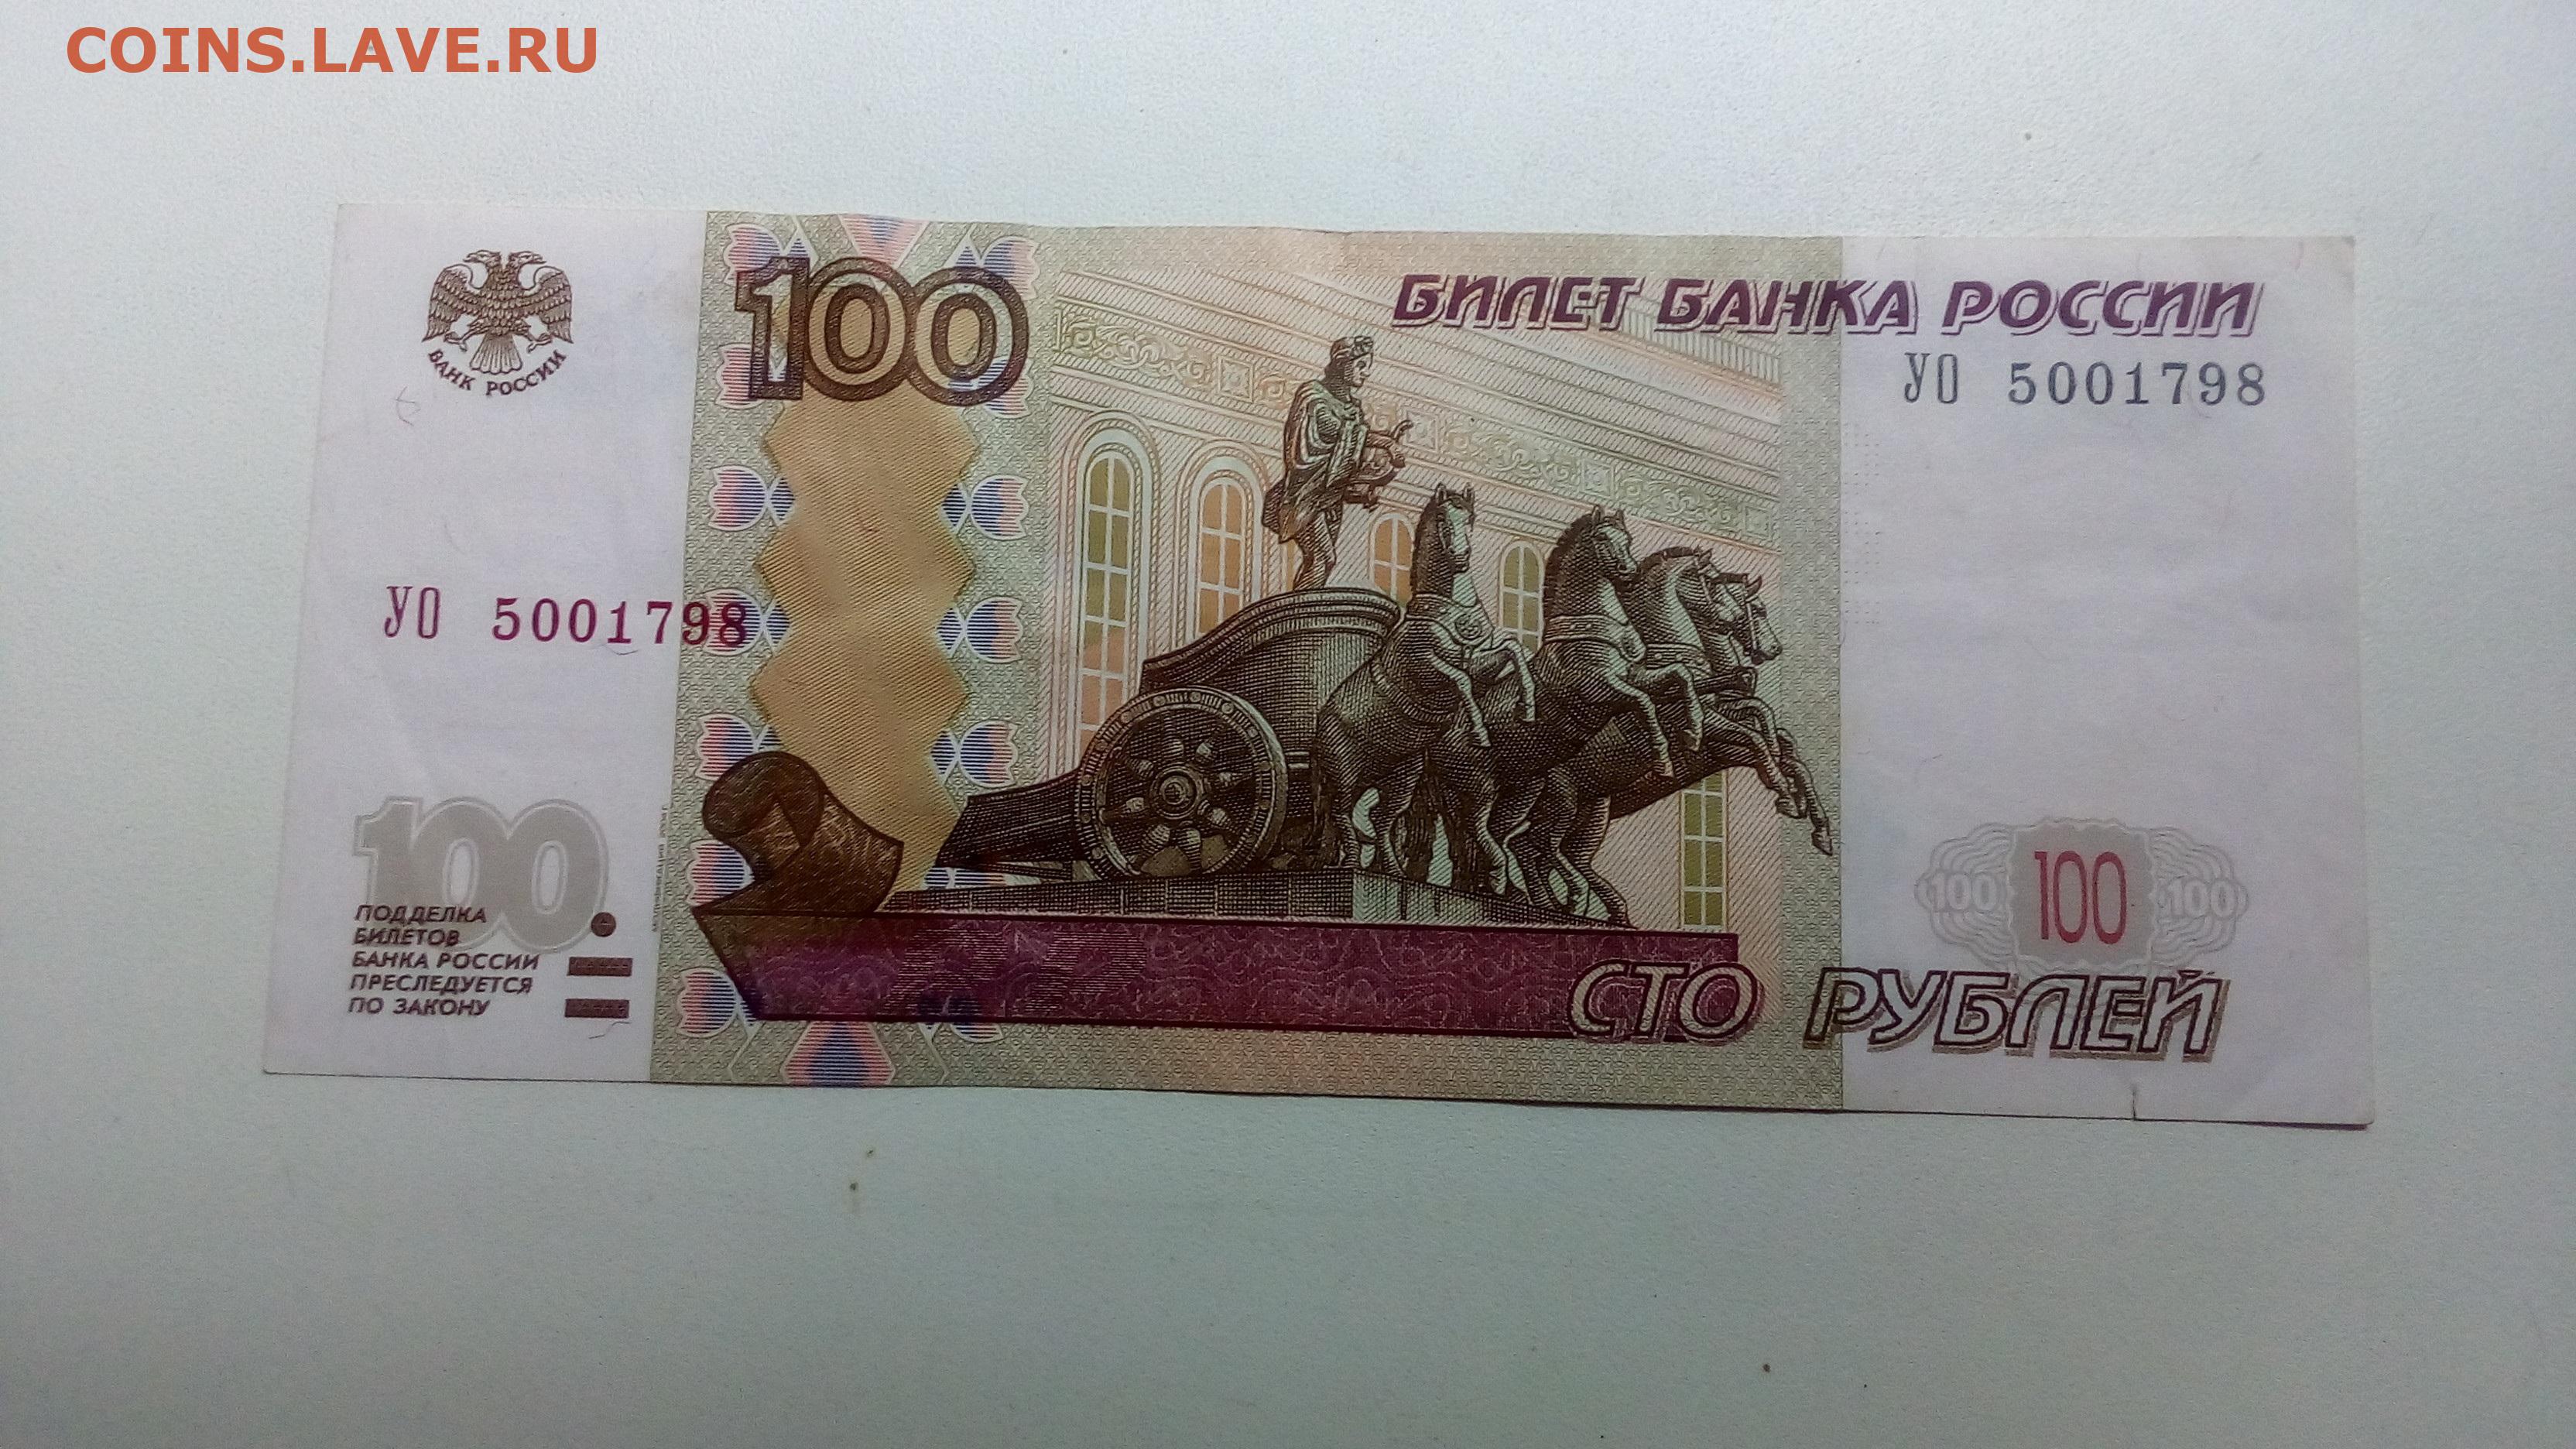 80 рублей россии. 100 Рублей. Купюра 100 рублей. Банкнота 100 рублей 1997. СТО рублей для распечатки.